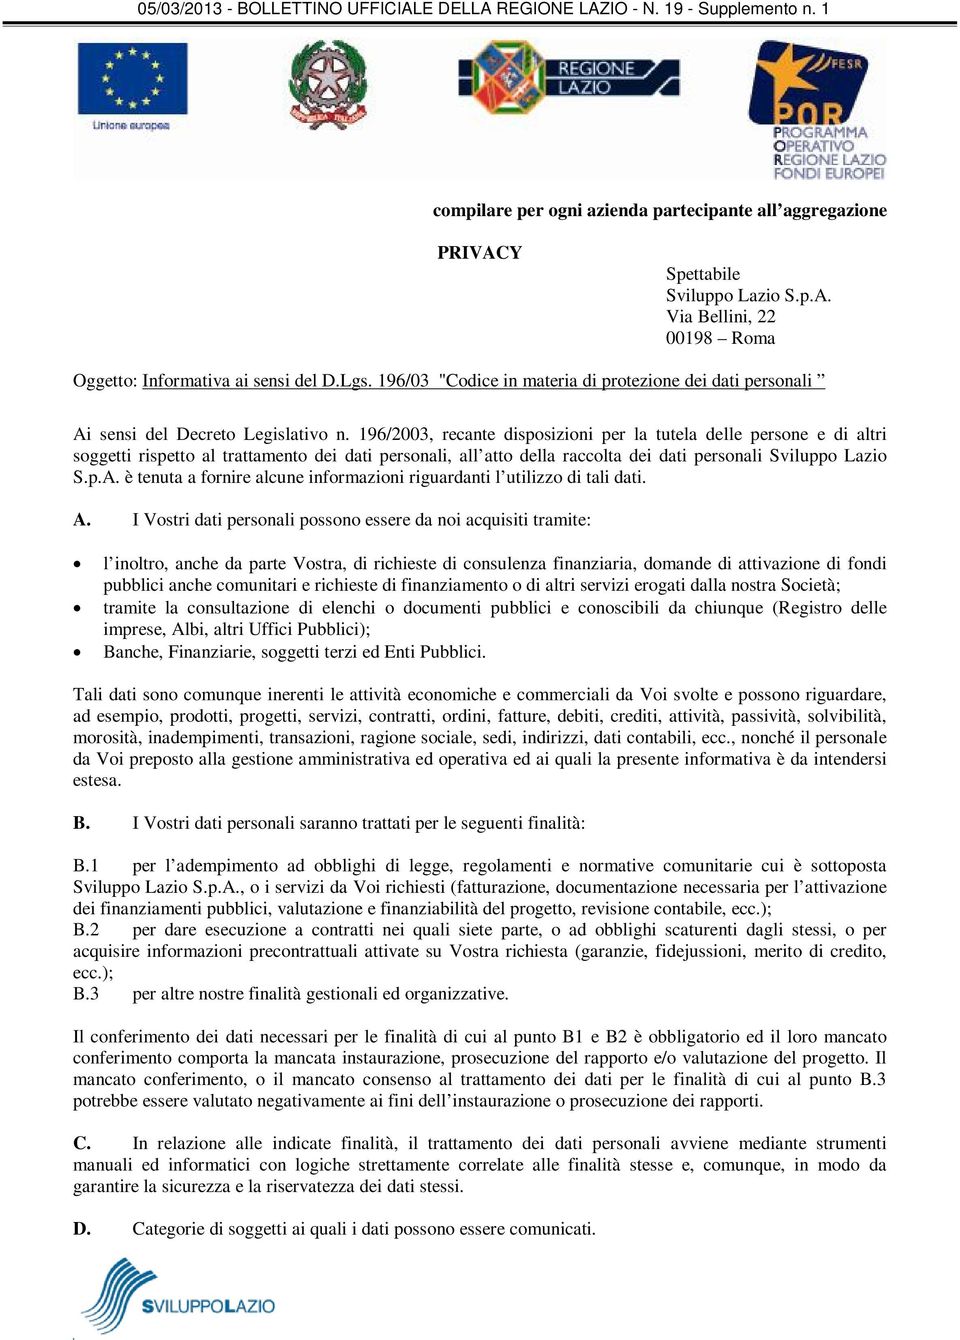 196/2003, recante disposizioni per la tutela delle persone e di altri soggetti rispetto al trattamento dei dati personali, all atto della raccolta dei dati personali Sviluppo Lazio S.p.A.